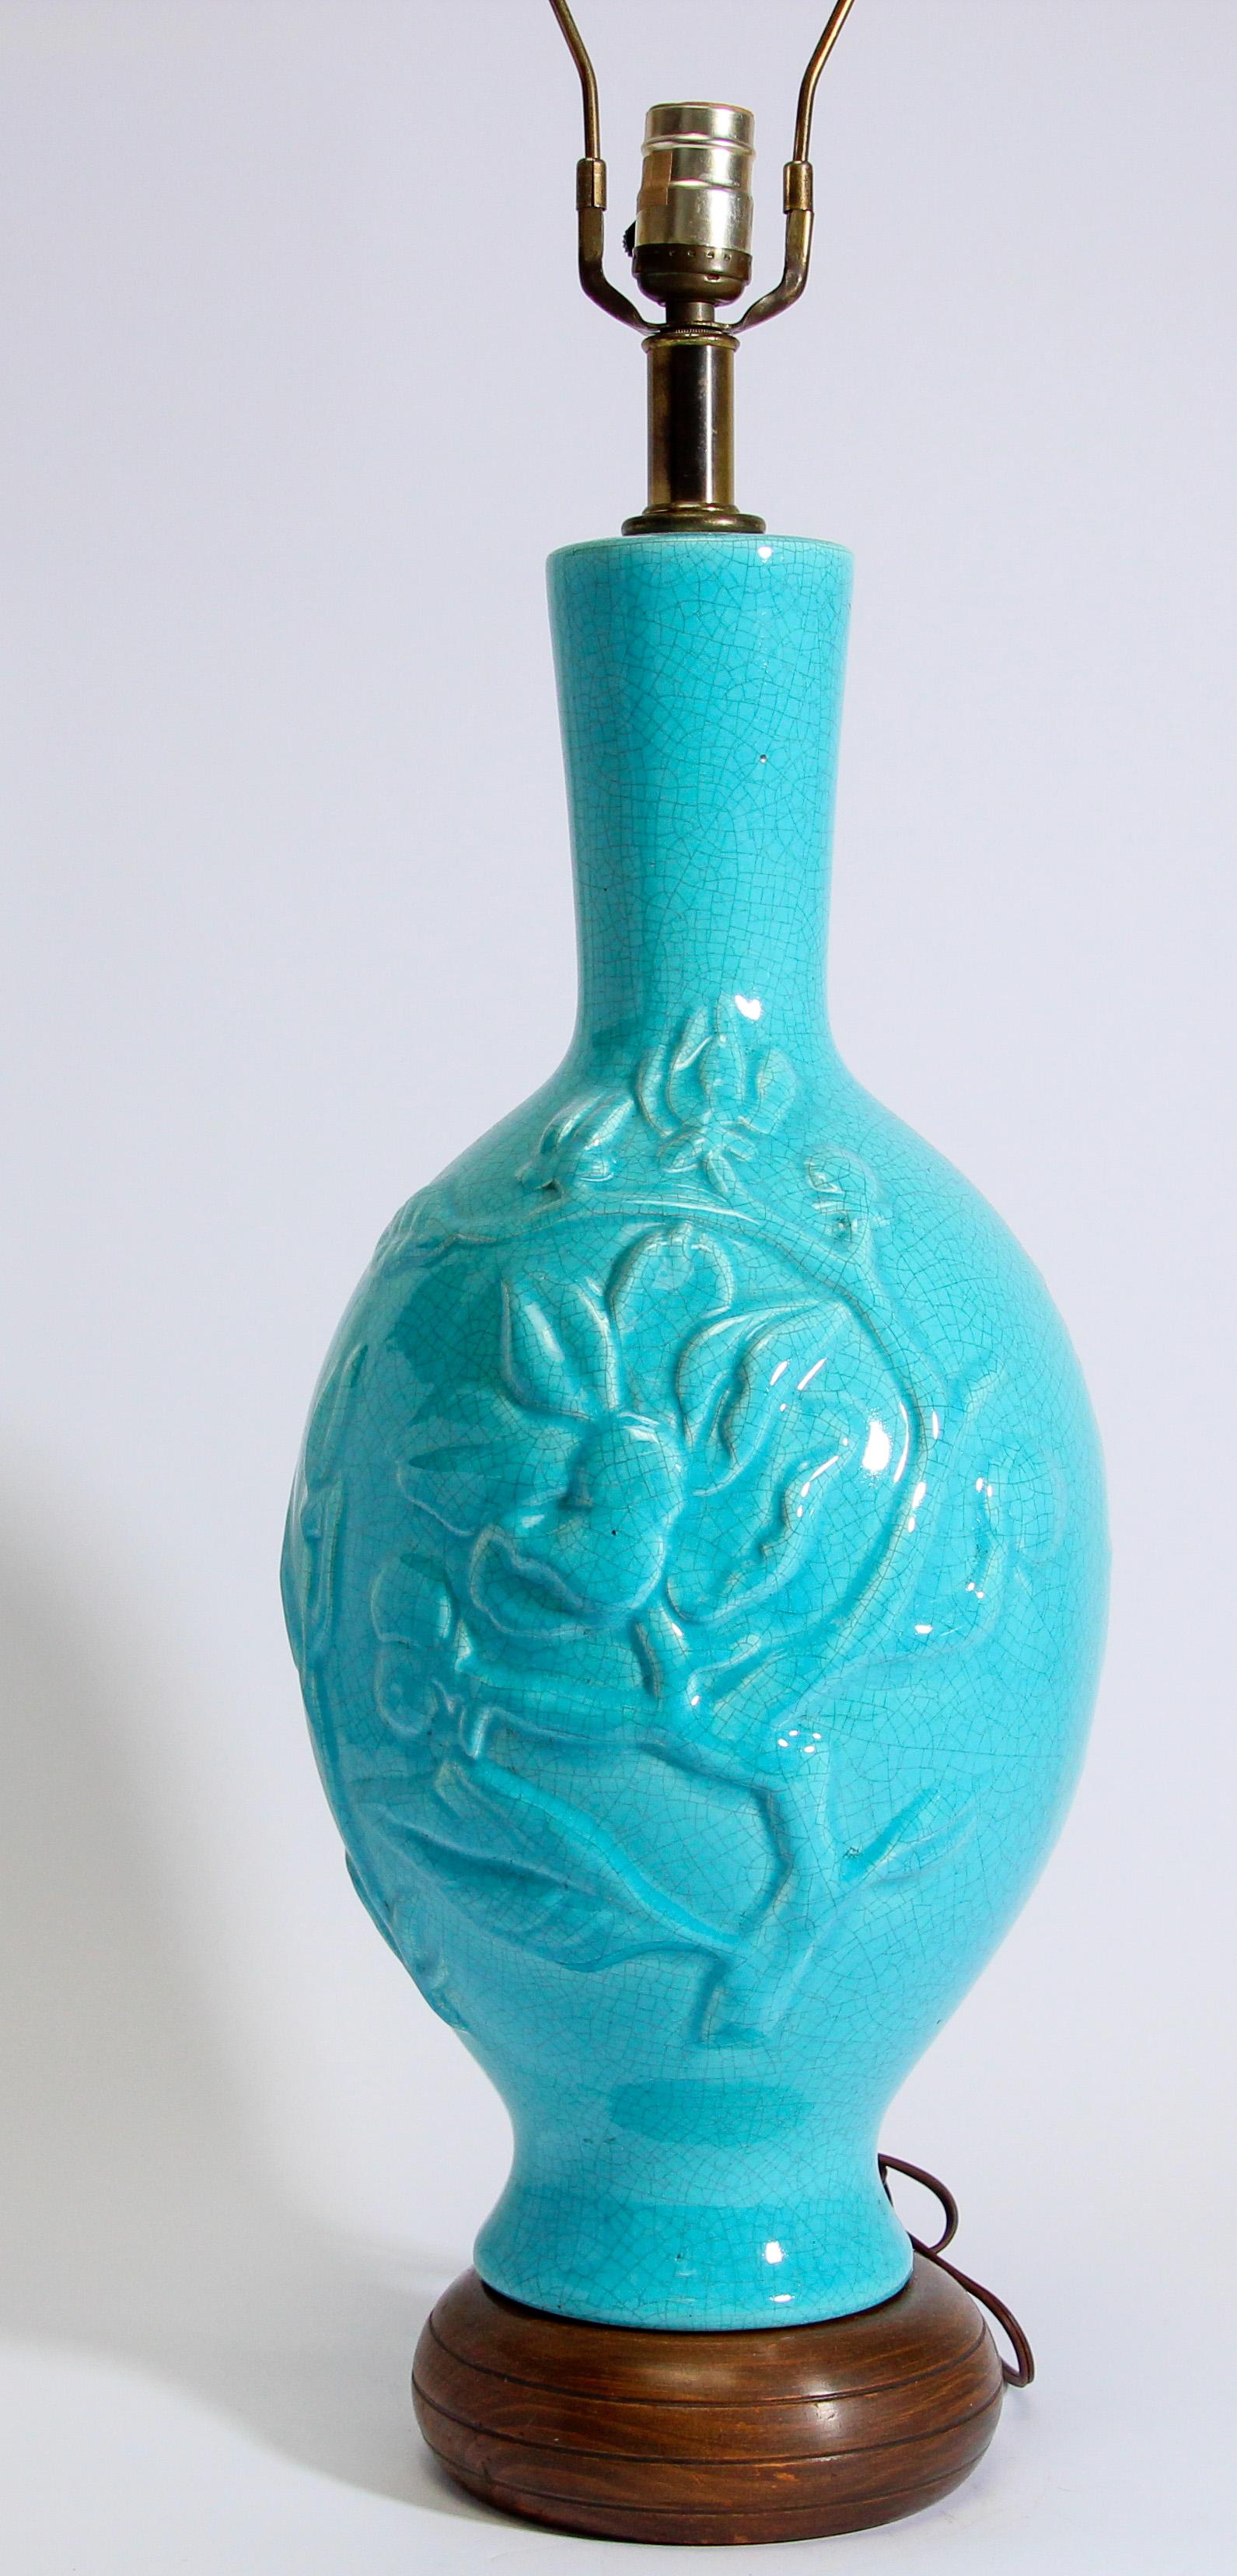 Lampe vintage asiatique chinoise en céramique craquelée émaillée de couleur turquoise avec feuillage en relief et Bouddha rieur.
Cette magnifique lampe de table de style chinoiserie du milieu du siècle dernier est d'un style intemporel.
Monté sur